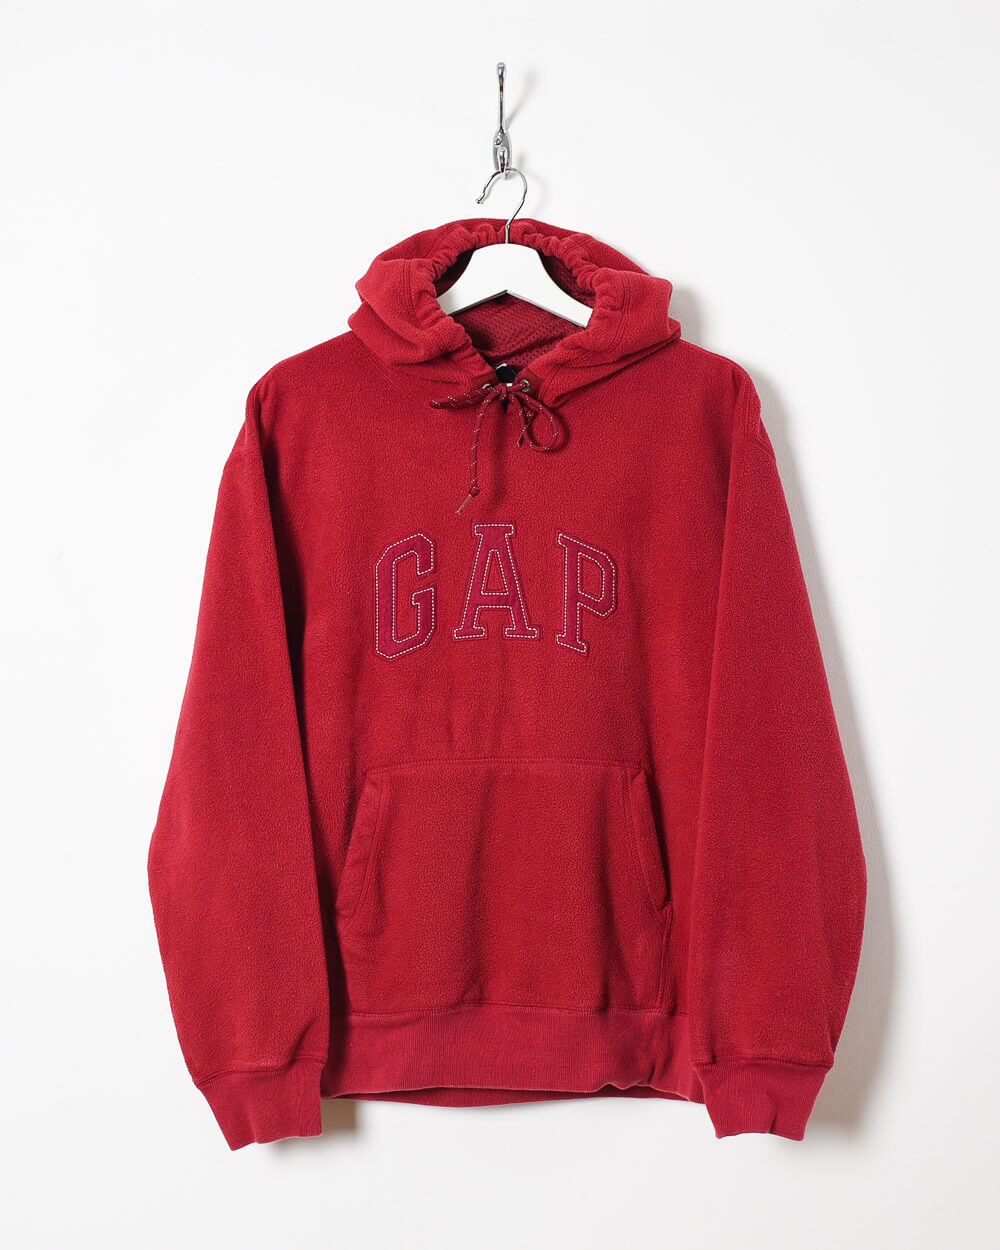 Red Gap Hooded Fleece - Medium